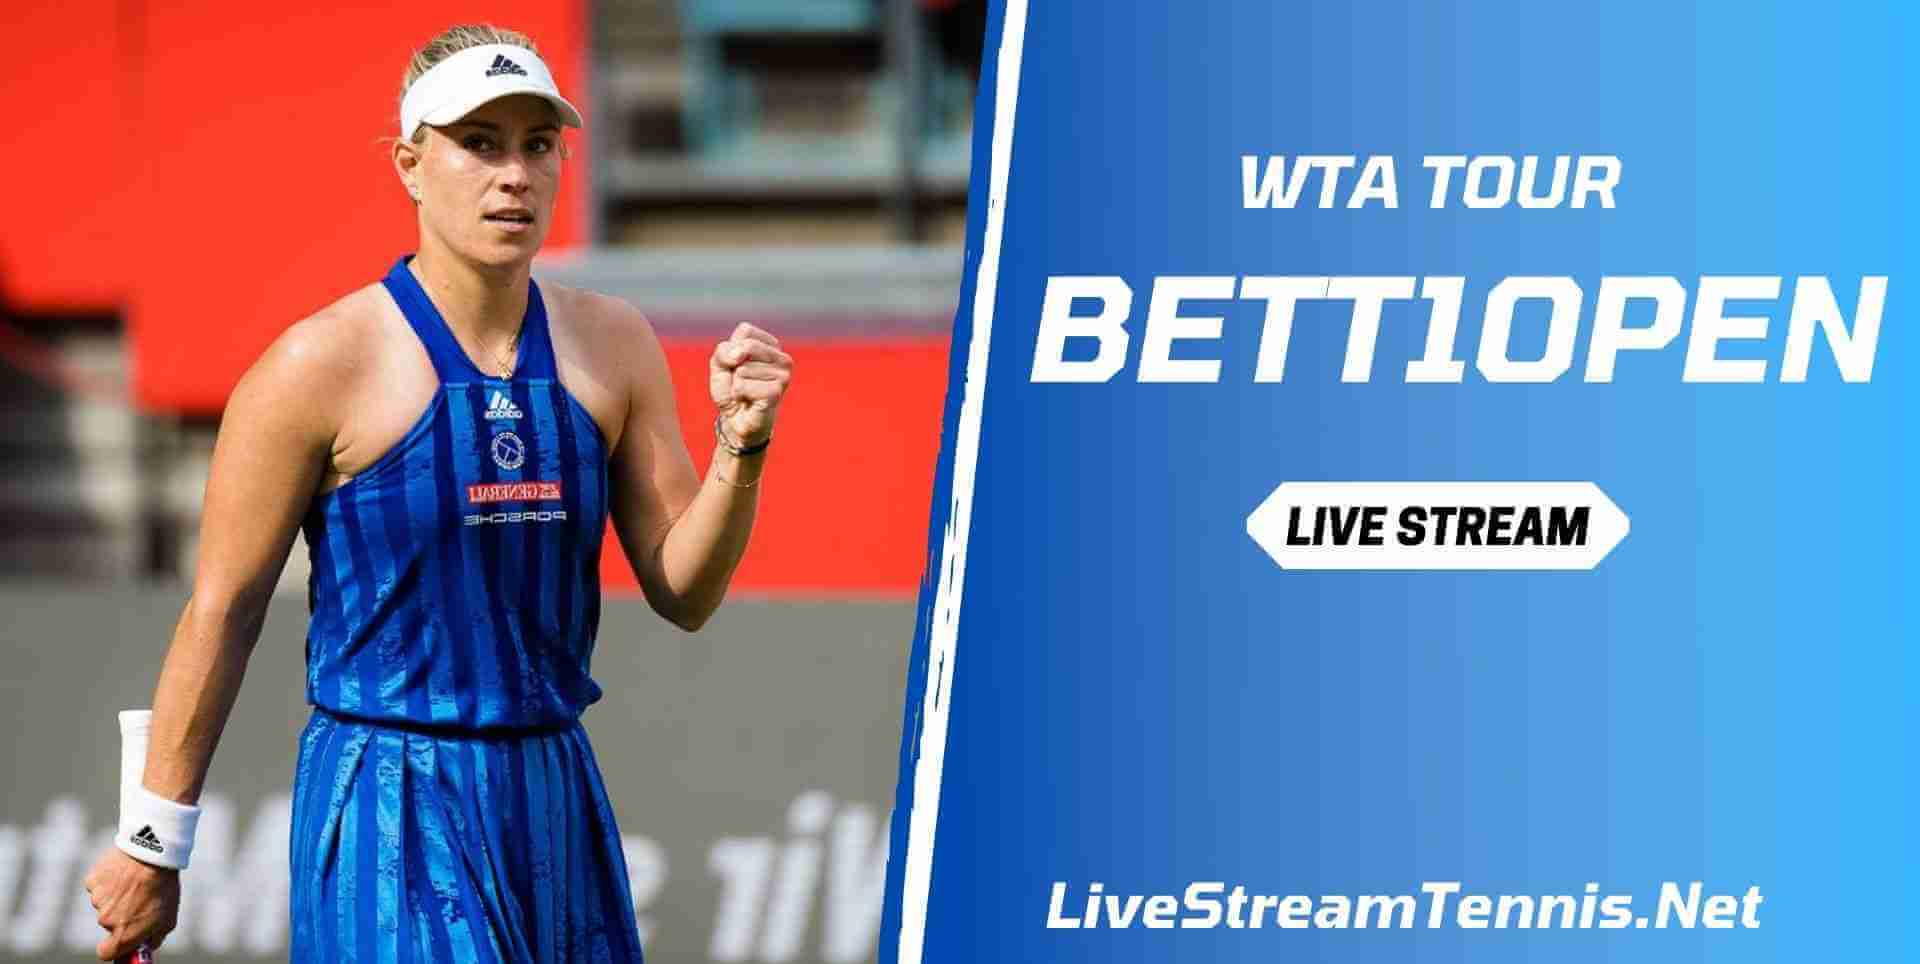 bett1open-tennis-live-stream-wta-tour